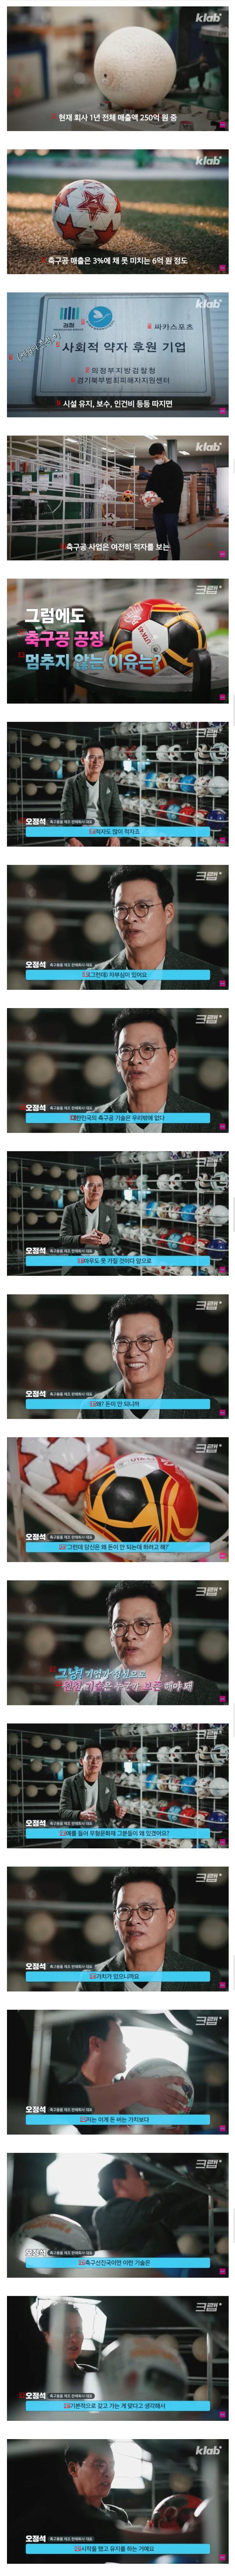 韓国で唯一サッカーボールを製造するメーカーの代表マインドレベルのブルブルJPG